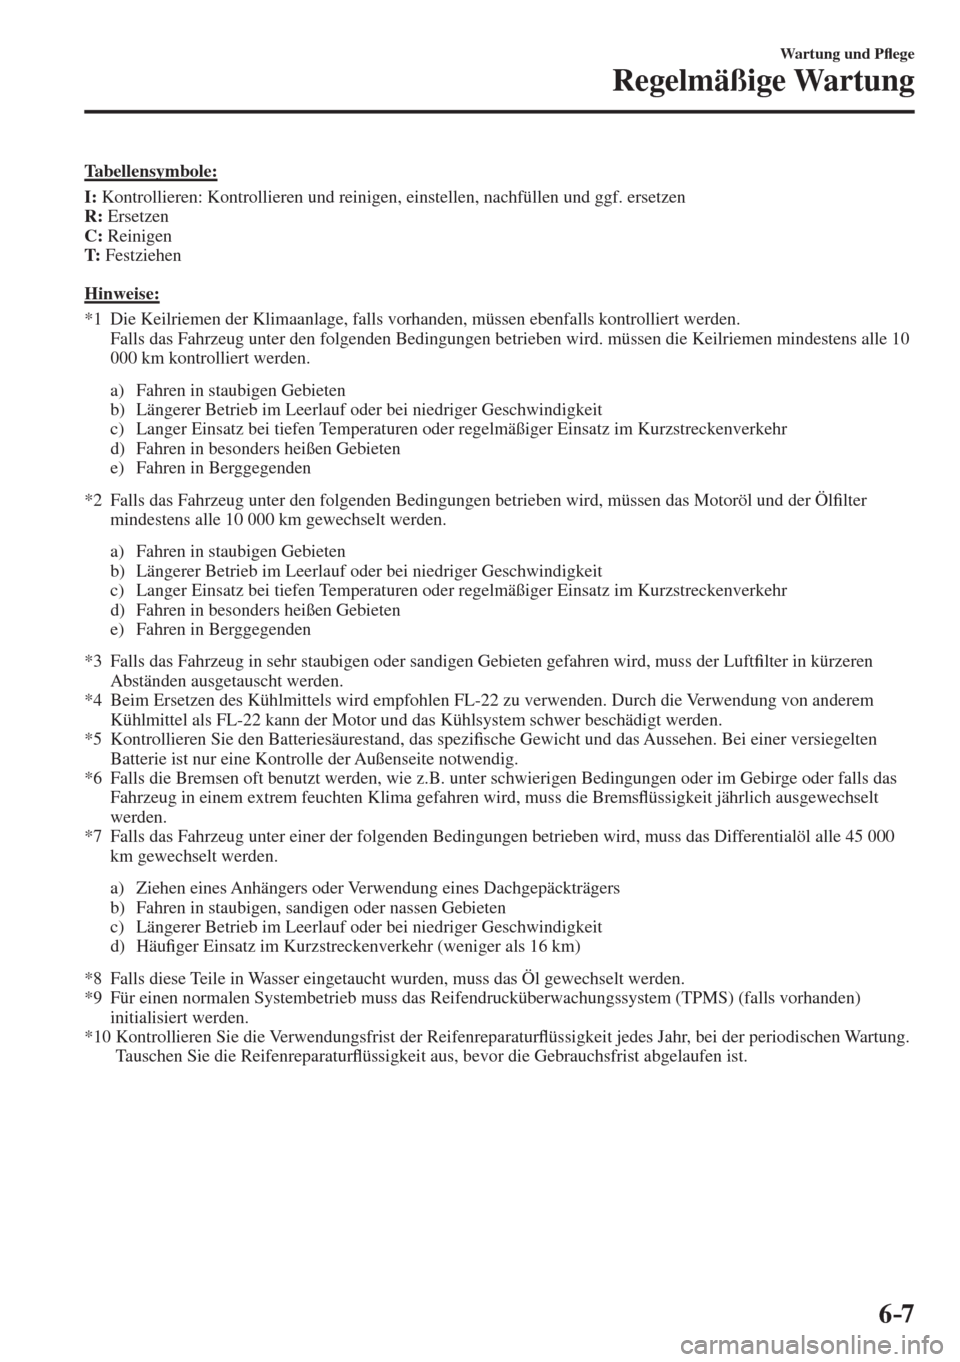 MAZDA MODEL CX-3 2016  Betriebsanleitung (in German) 6–7
Wartung und P�À ege
Regelmäßige Wartung
    Tabellensymbole:
       I :  Kontrollieren: Kontrollieren und reinigen, einstellen, nachfüllen und ggf. ersetzen
     R :   Ersetzen
     C :   Re